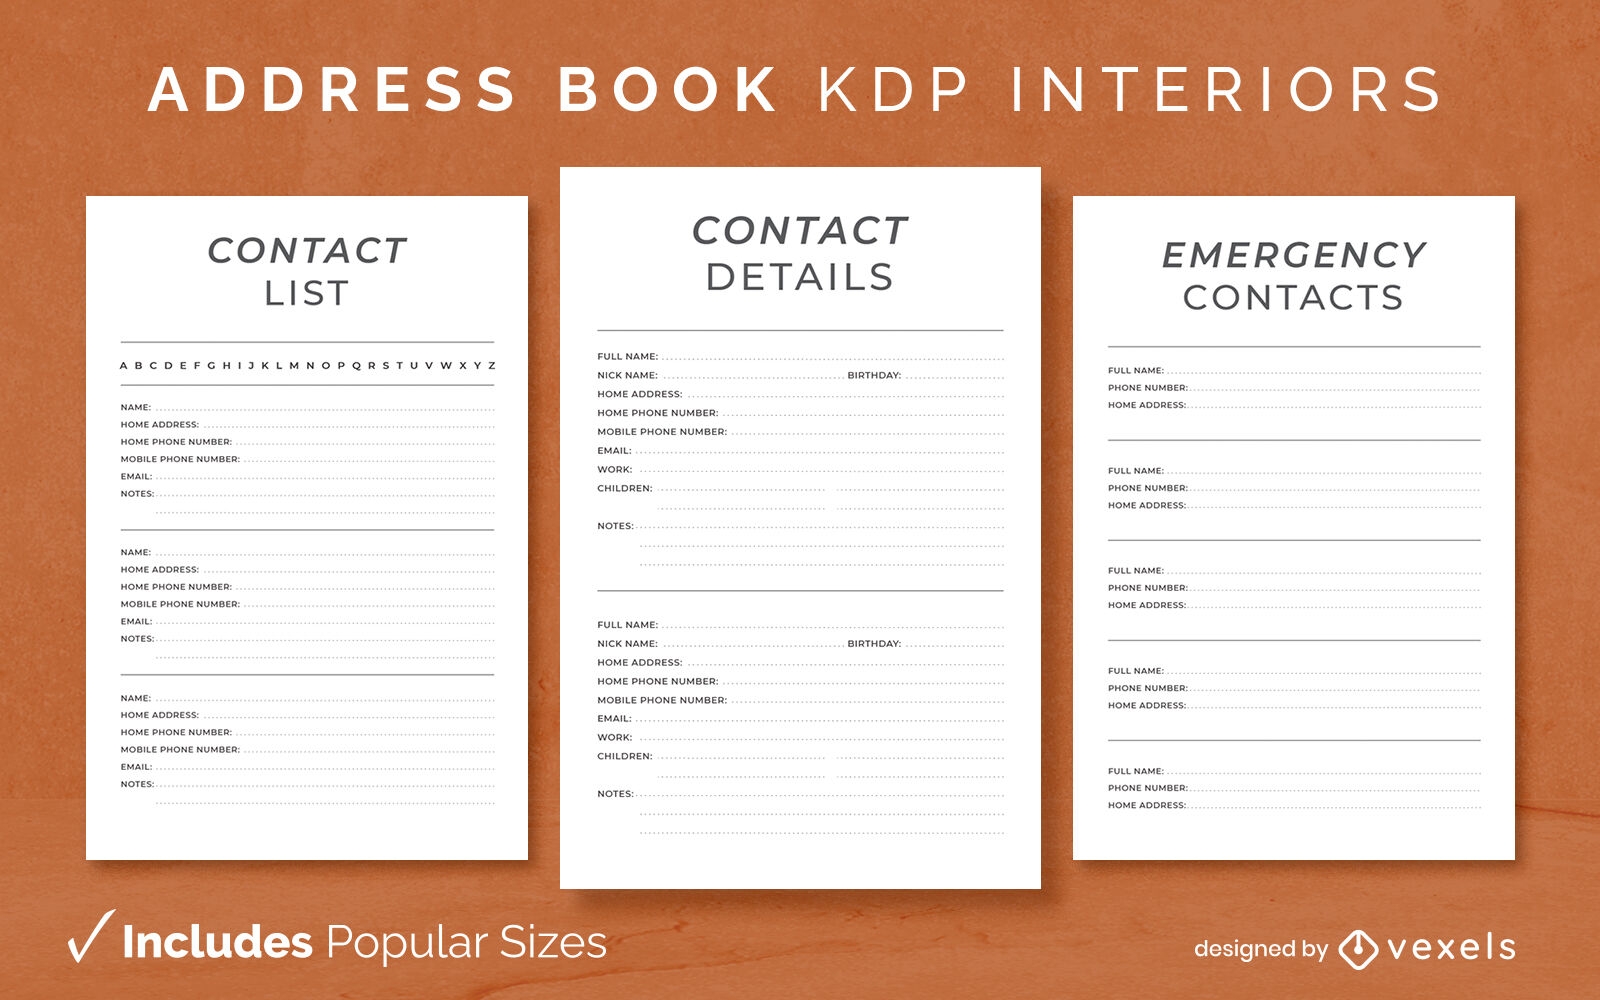 Modelo de diário de catálogo de endereços KDP design de interiores